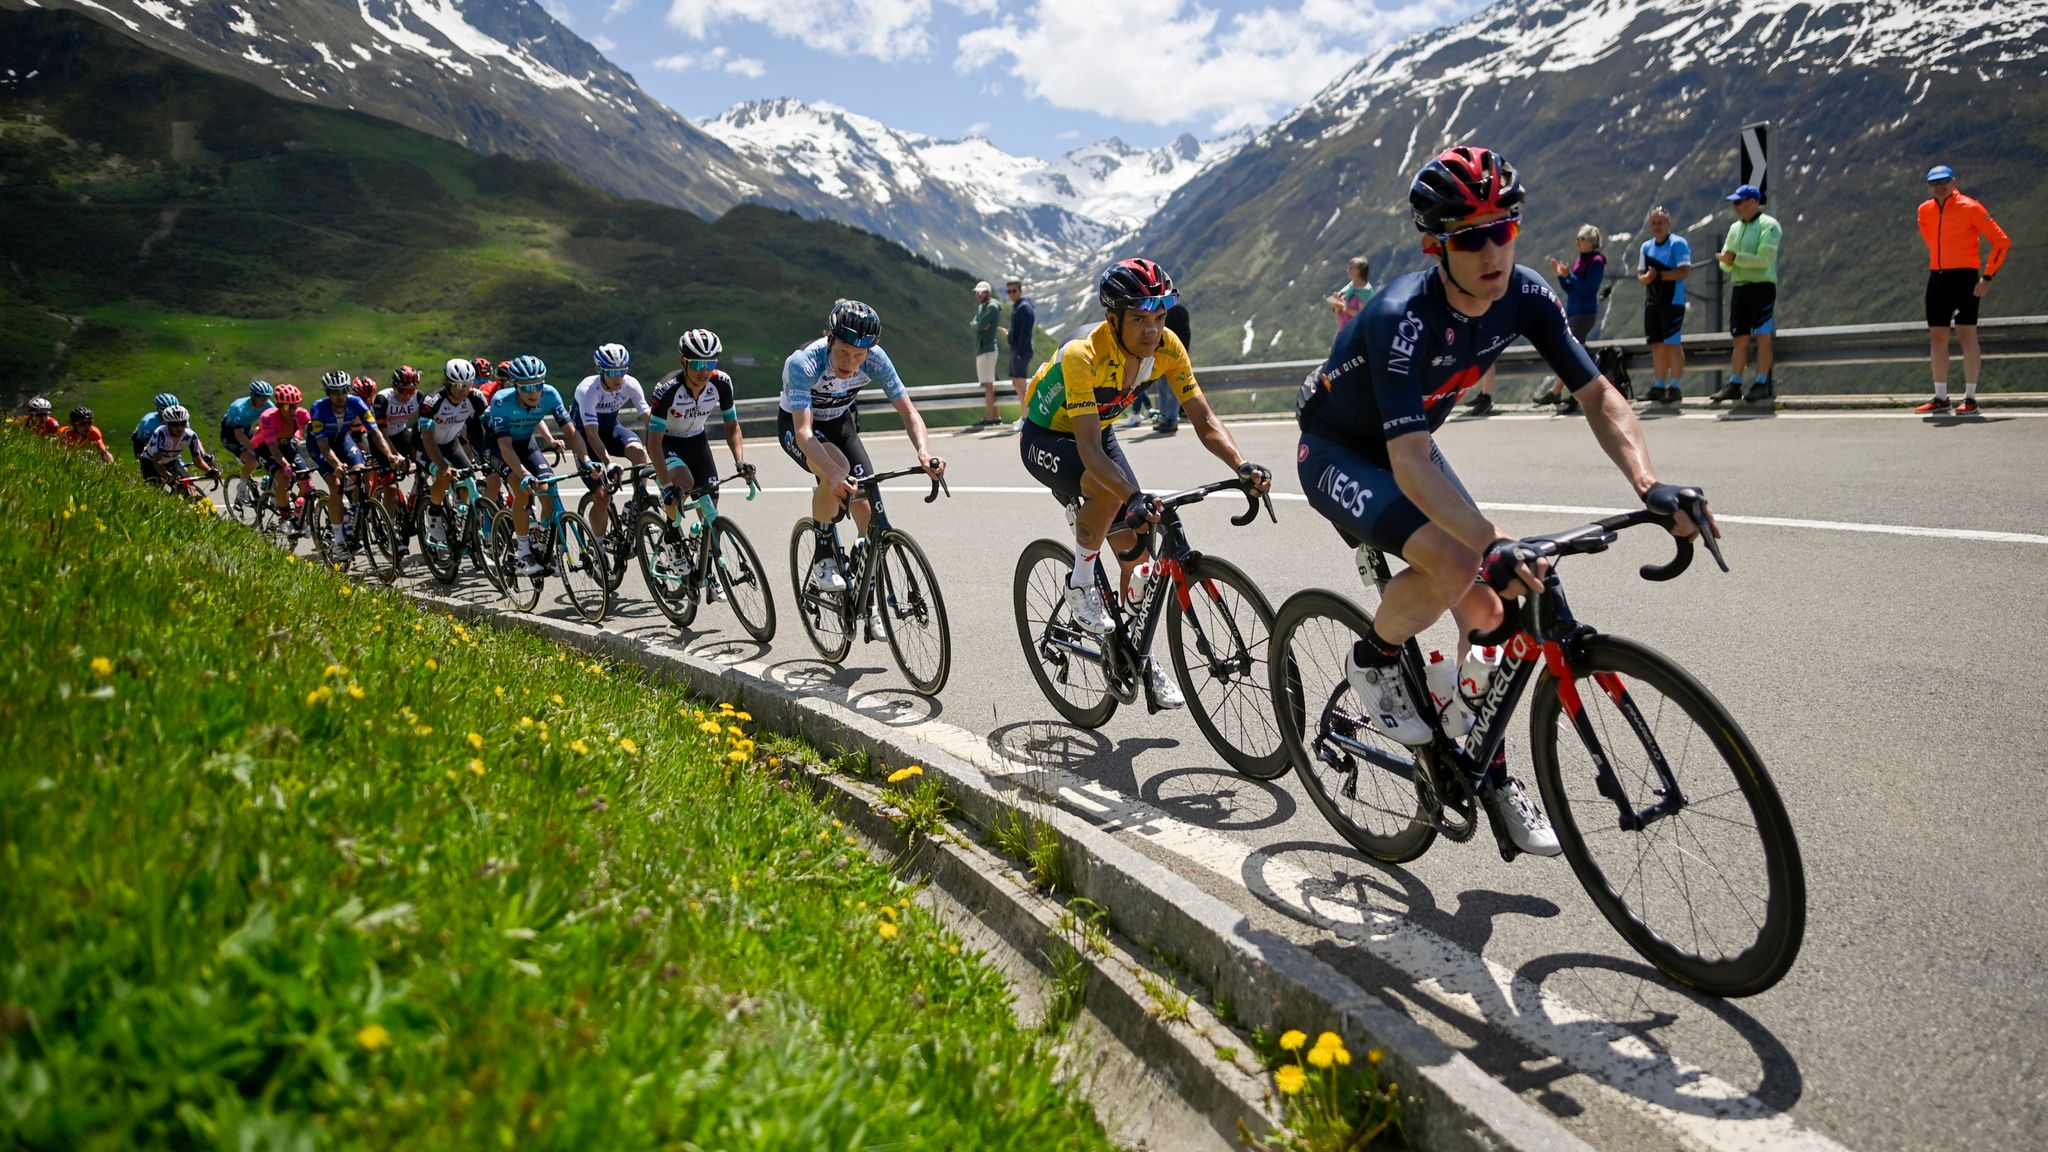 Tour de France Covid-19 outbreak at Tour de Suisse raises concerns Cycling News Sky Sports